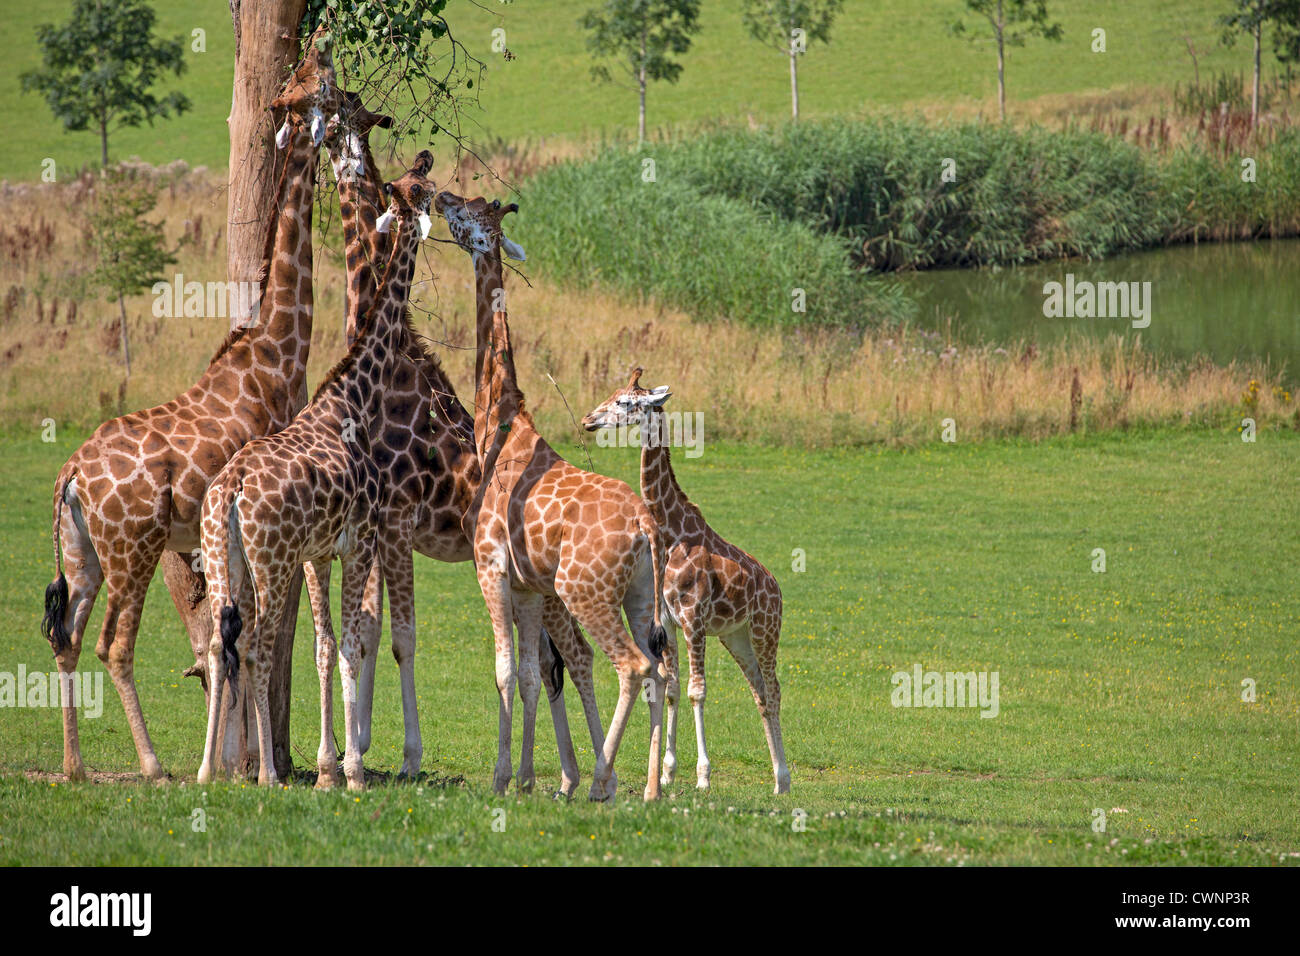 Giraffes eating Stock Photo